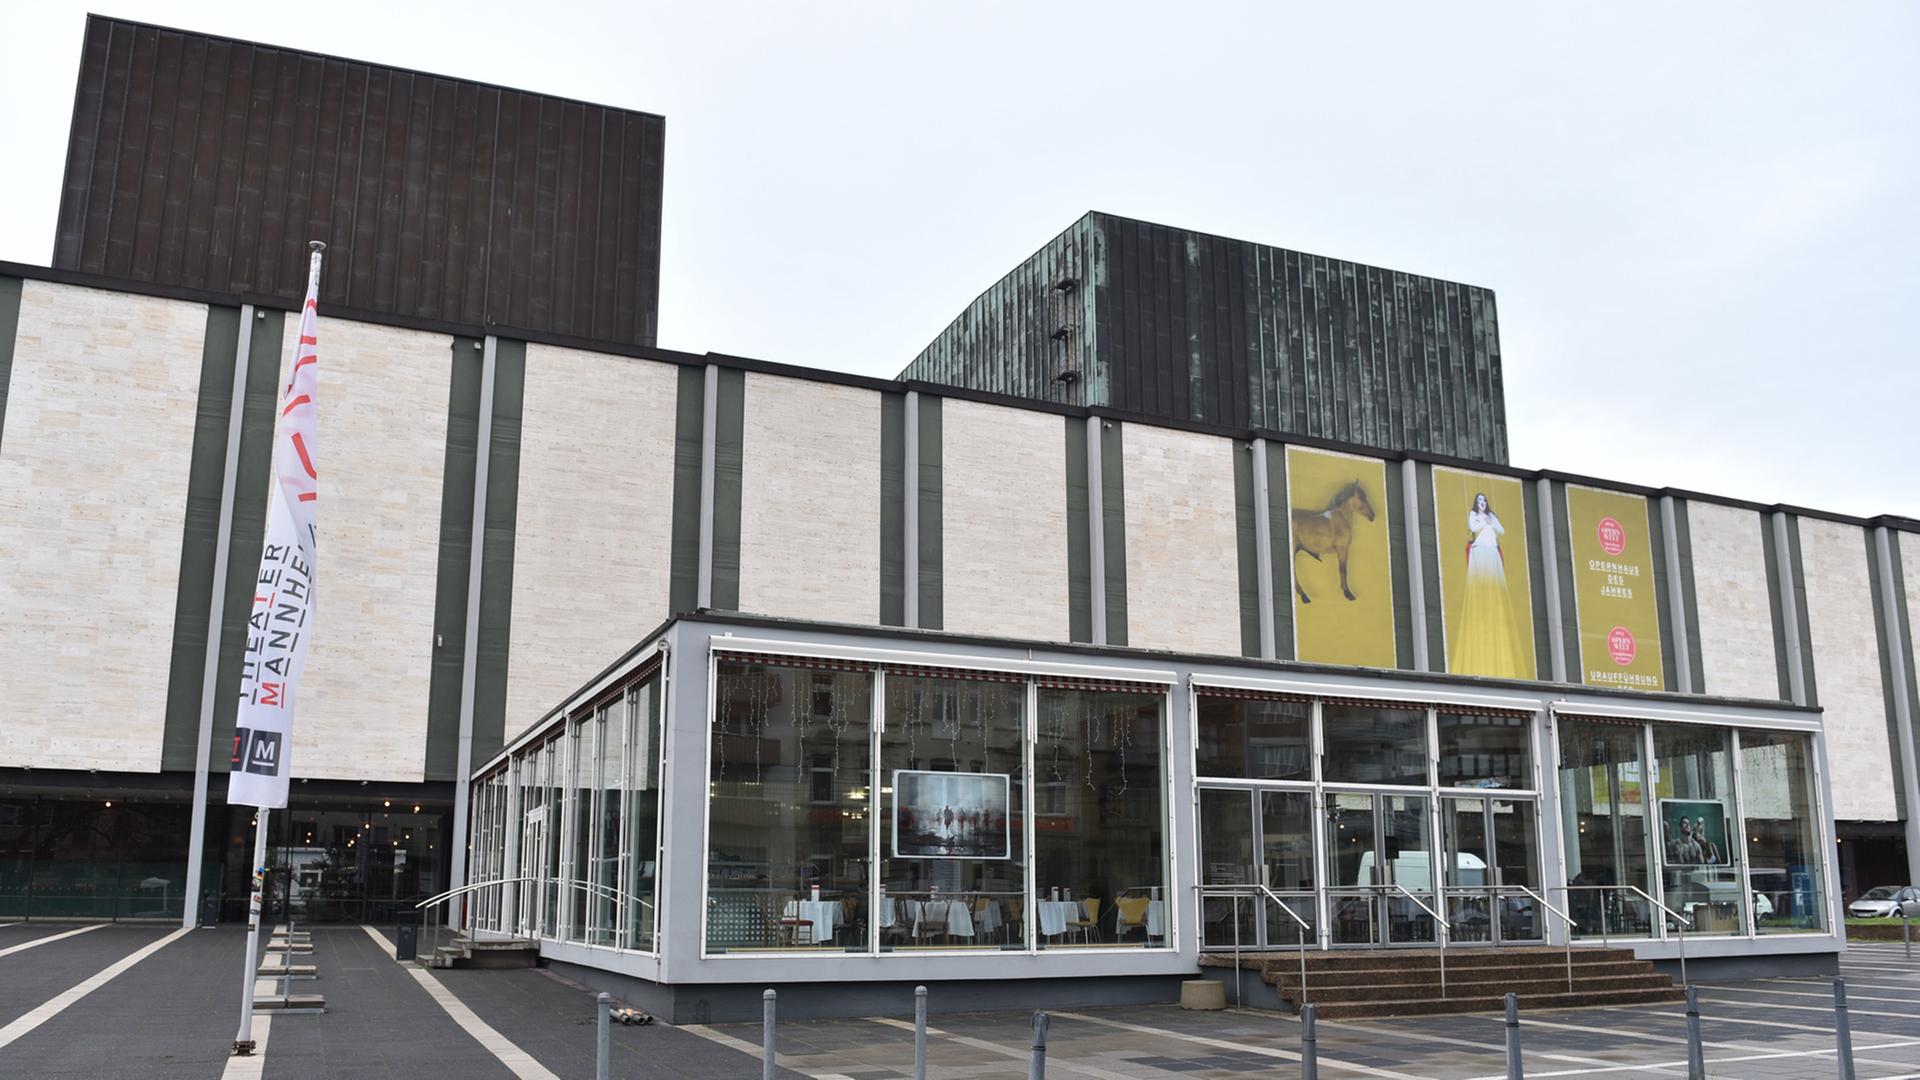 Blick auf den Eingangsbereich des Nationaltheaters in Mannheim in Baden-Württemberg, aufgenommen 2015